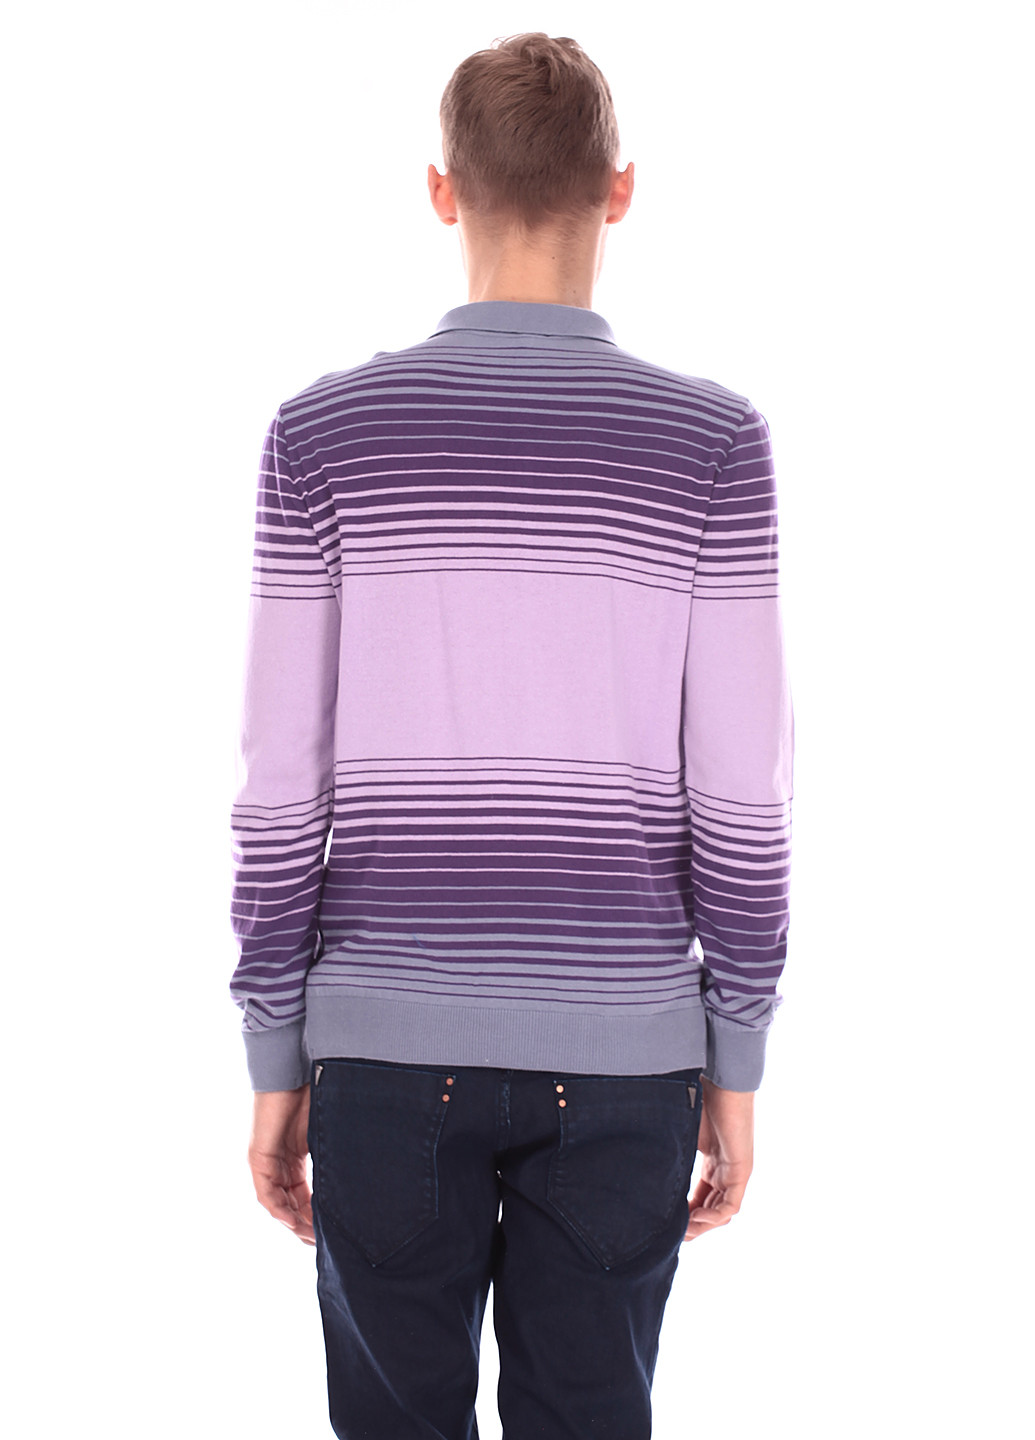 Светло-фиолетовая футболка-поло для мужчин Folgore Milano в полоску